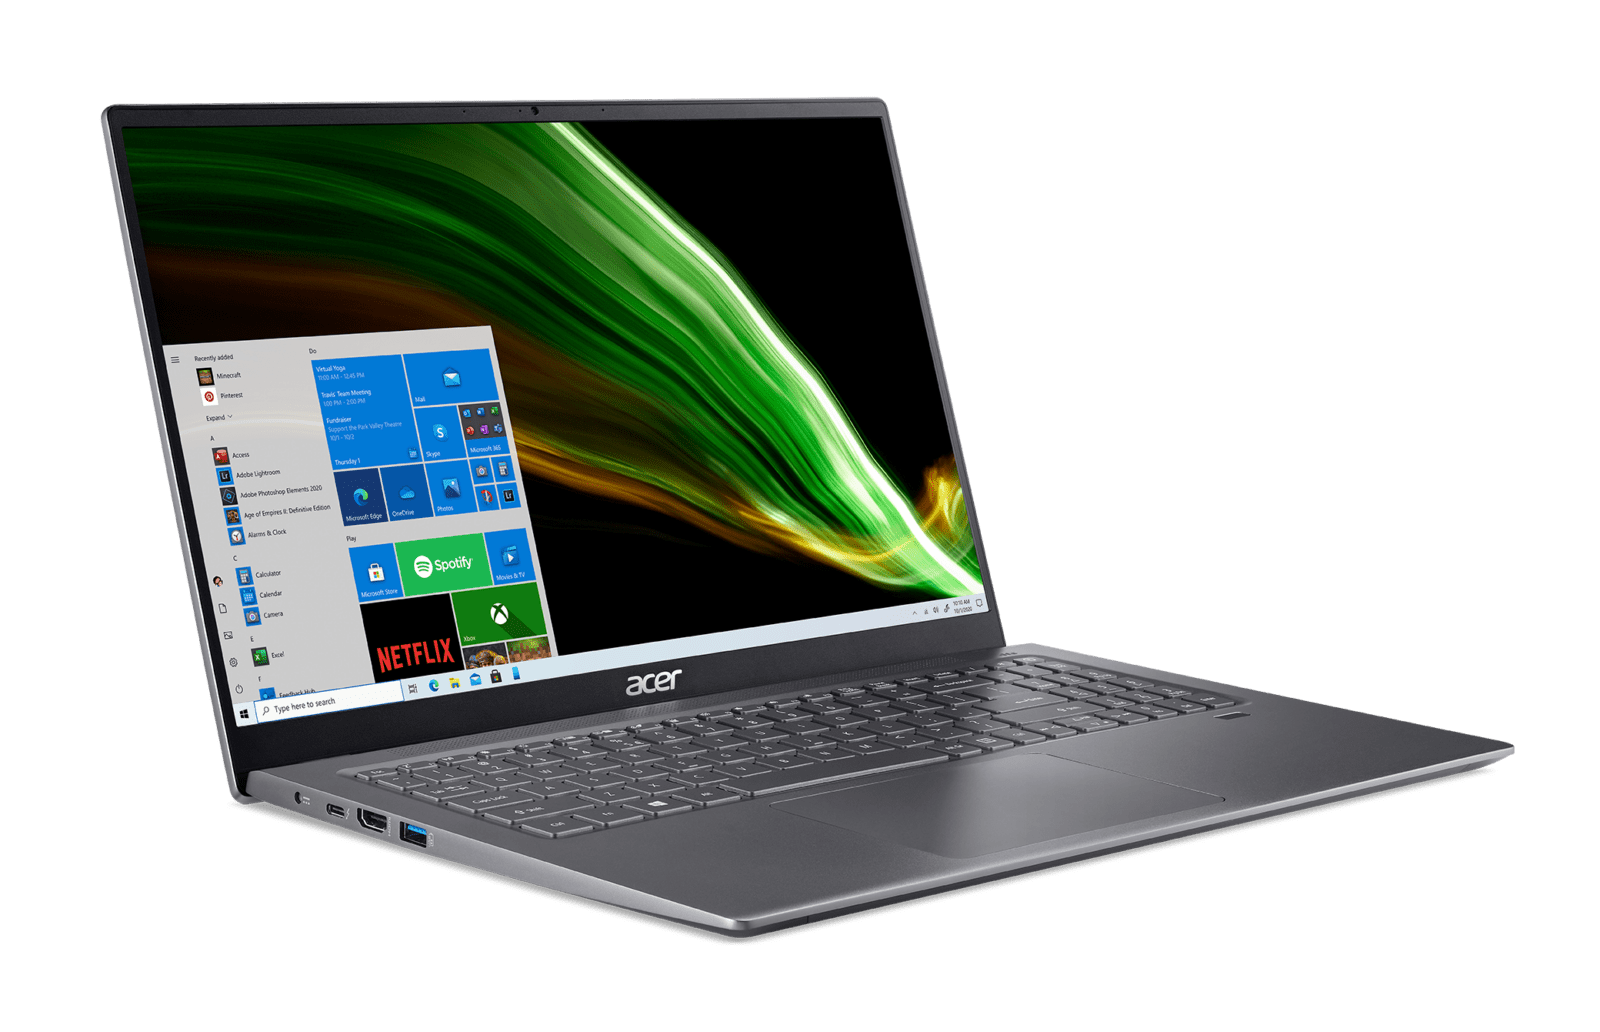 Acer представила новый легкий и производительный ноутбук Swift 3 (Swift 3 SF316 51 FpBl Sg 02c)